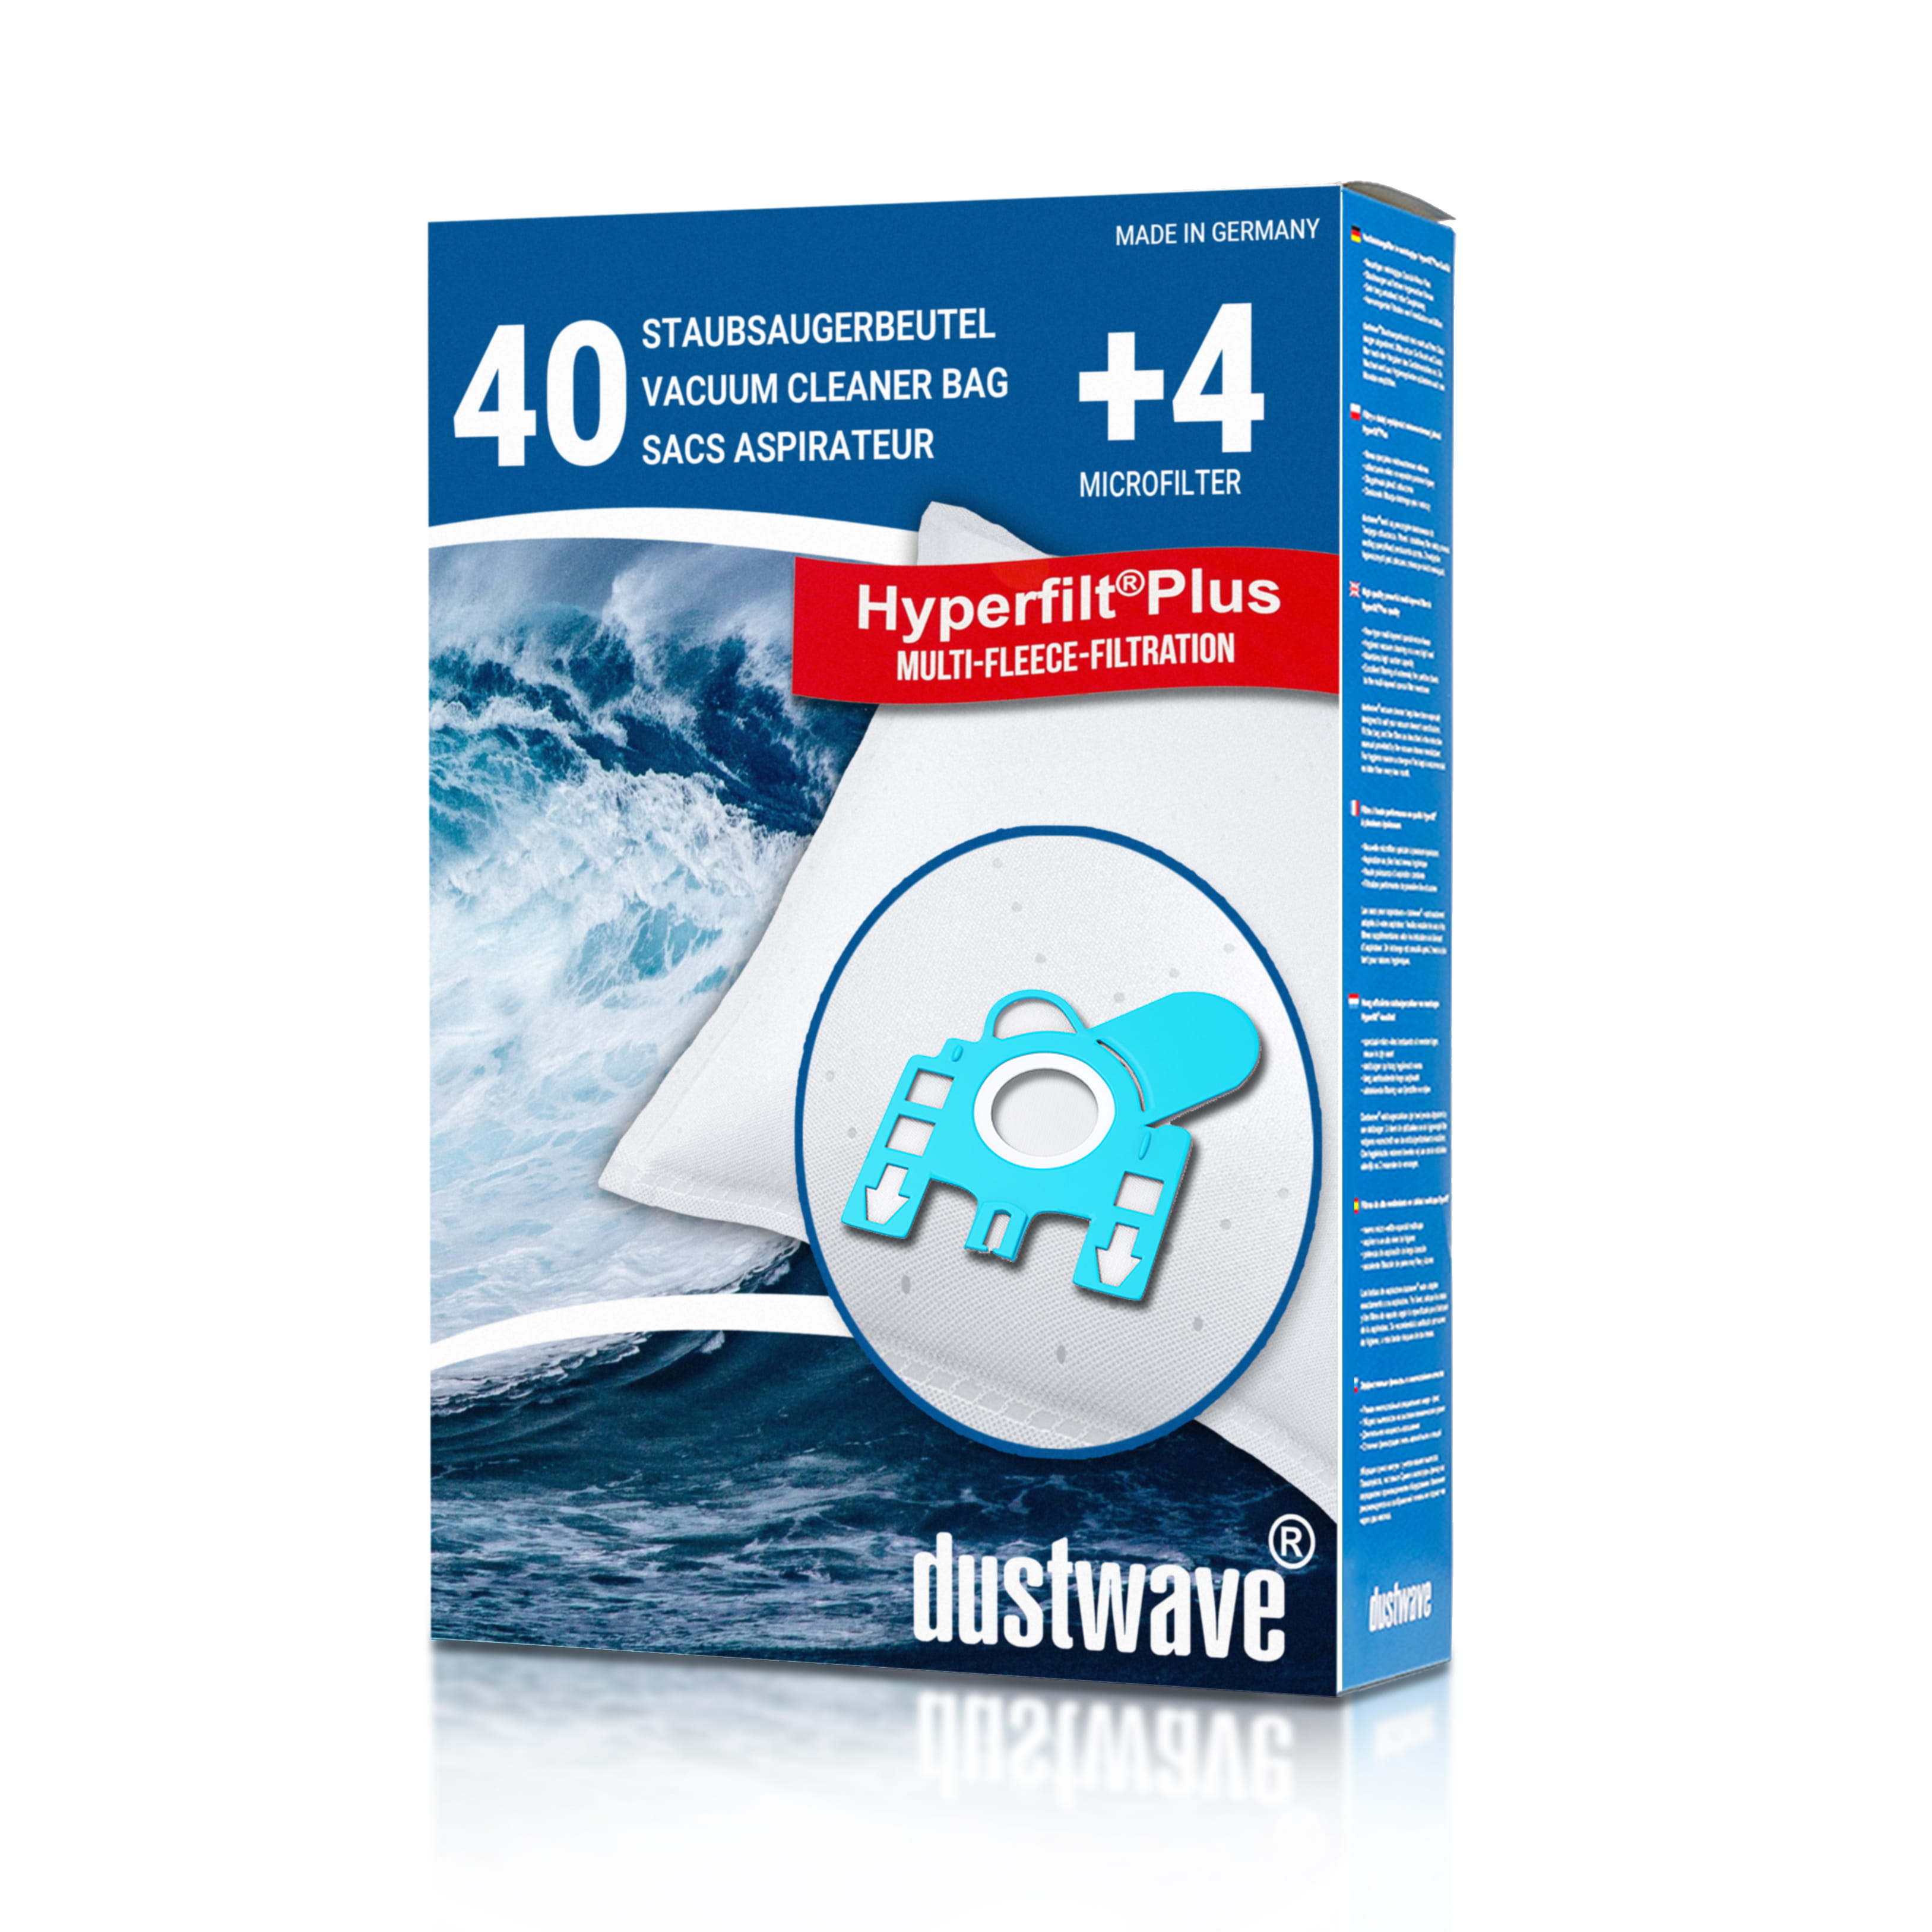 Dustwave® 40 Staubsaugerbeutel für Hoover 39000231 ANNUL - hocheffizient, mehrlagiges Mikrovlies mit Hygieneverschluss - Made in Germany